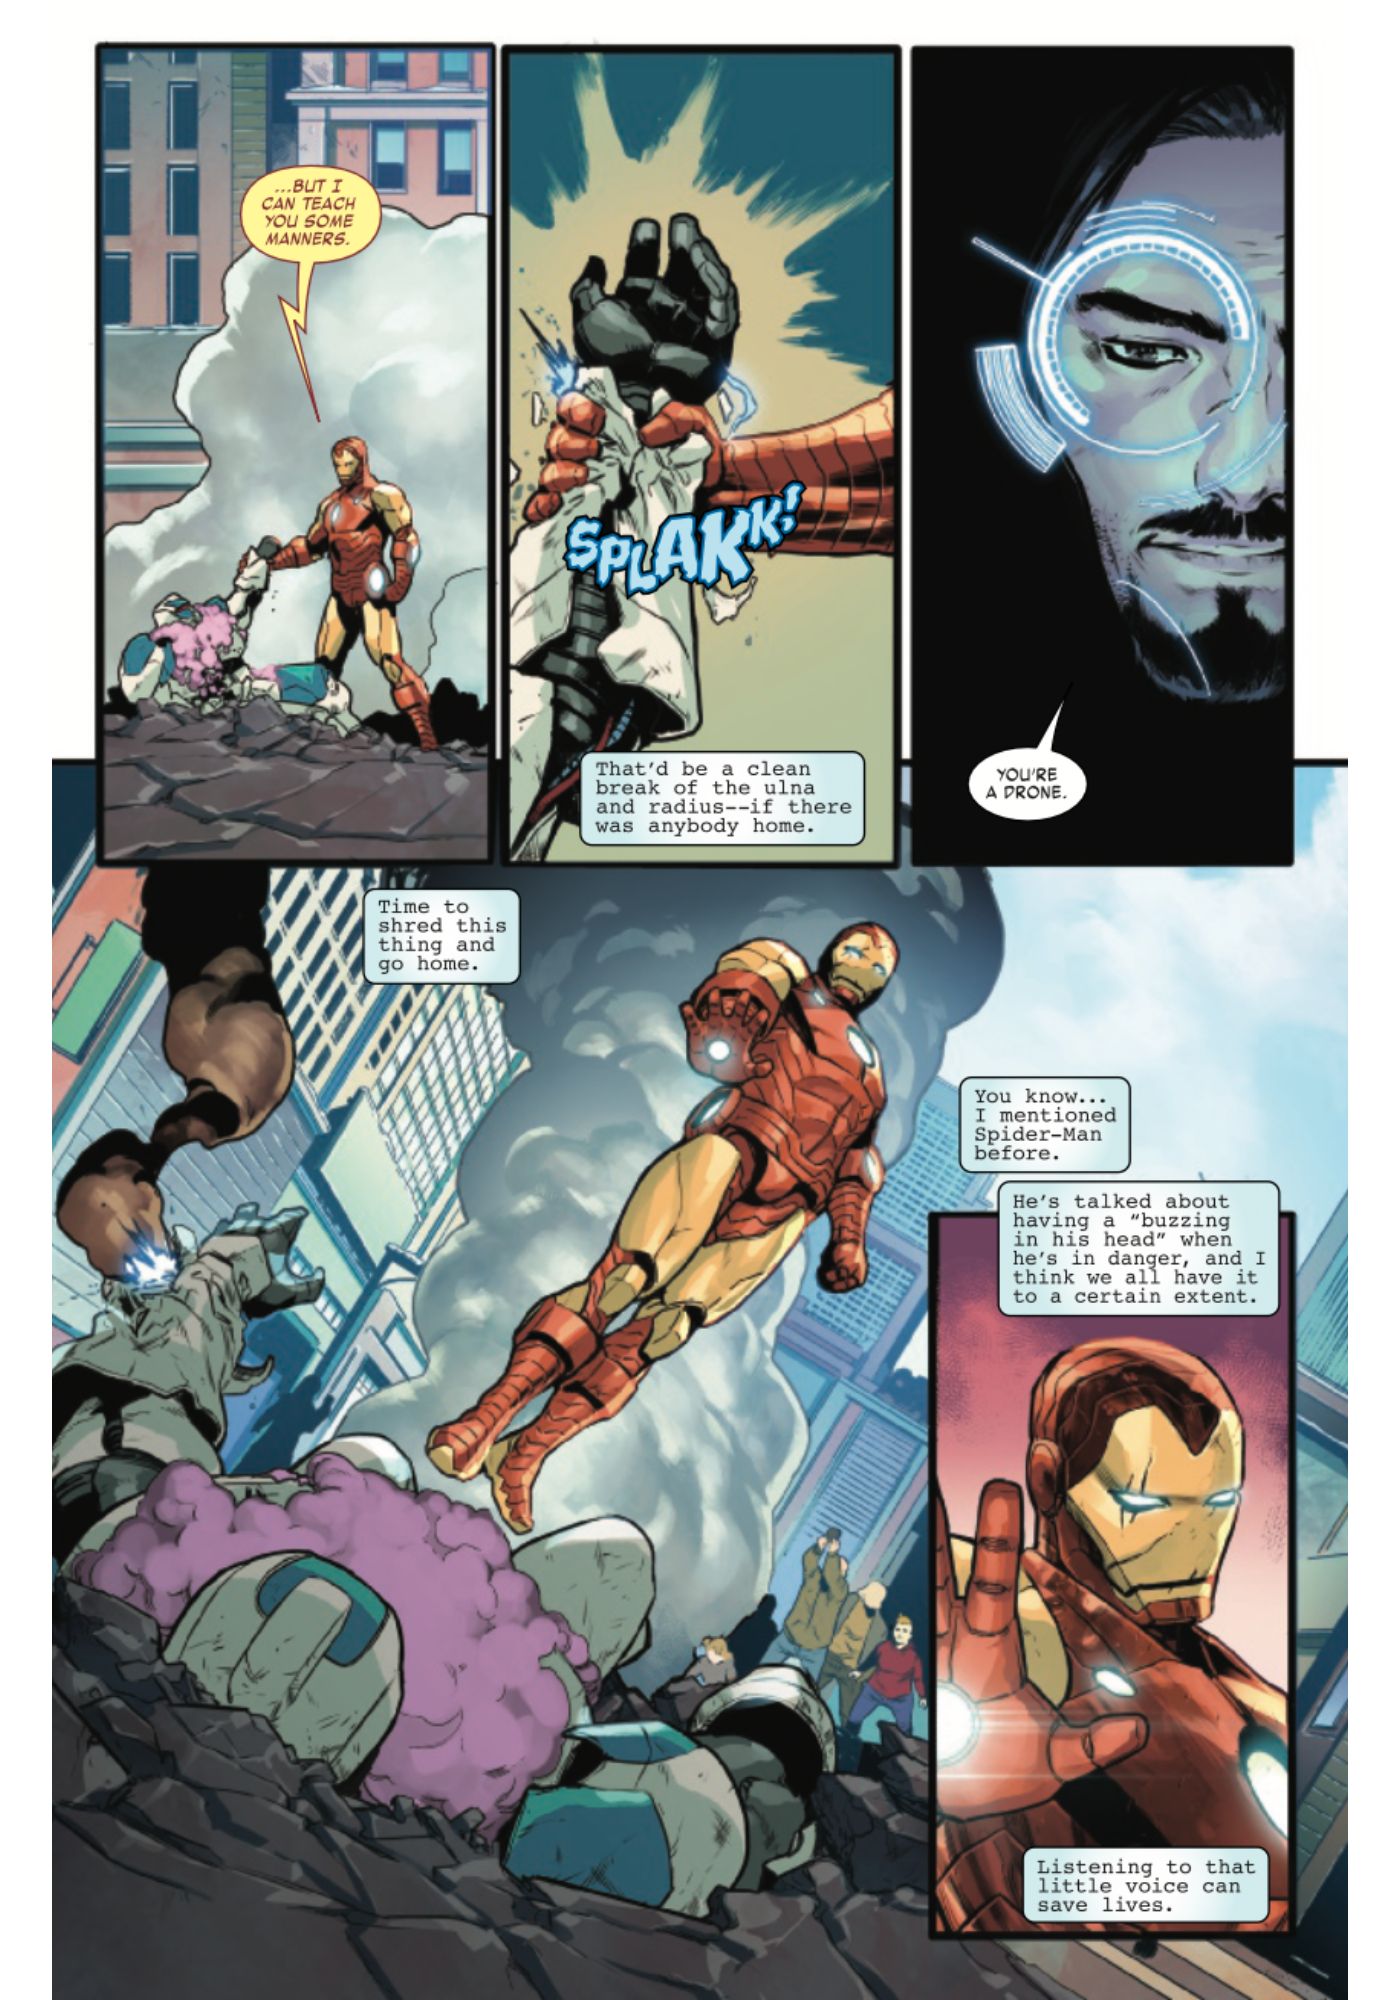 Homem de Ferro Senso de Aranha Marvel Comics